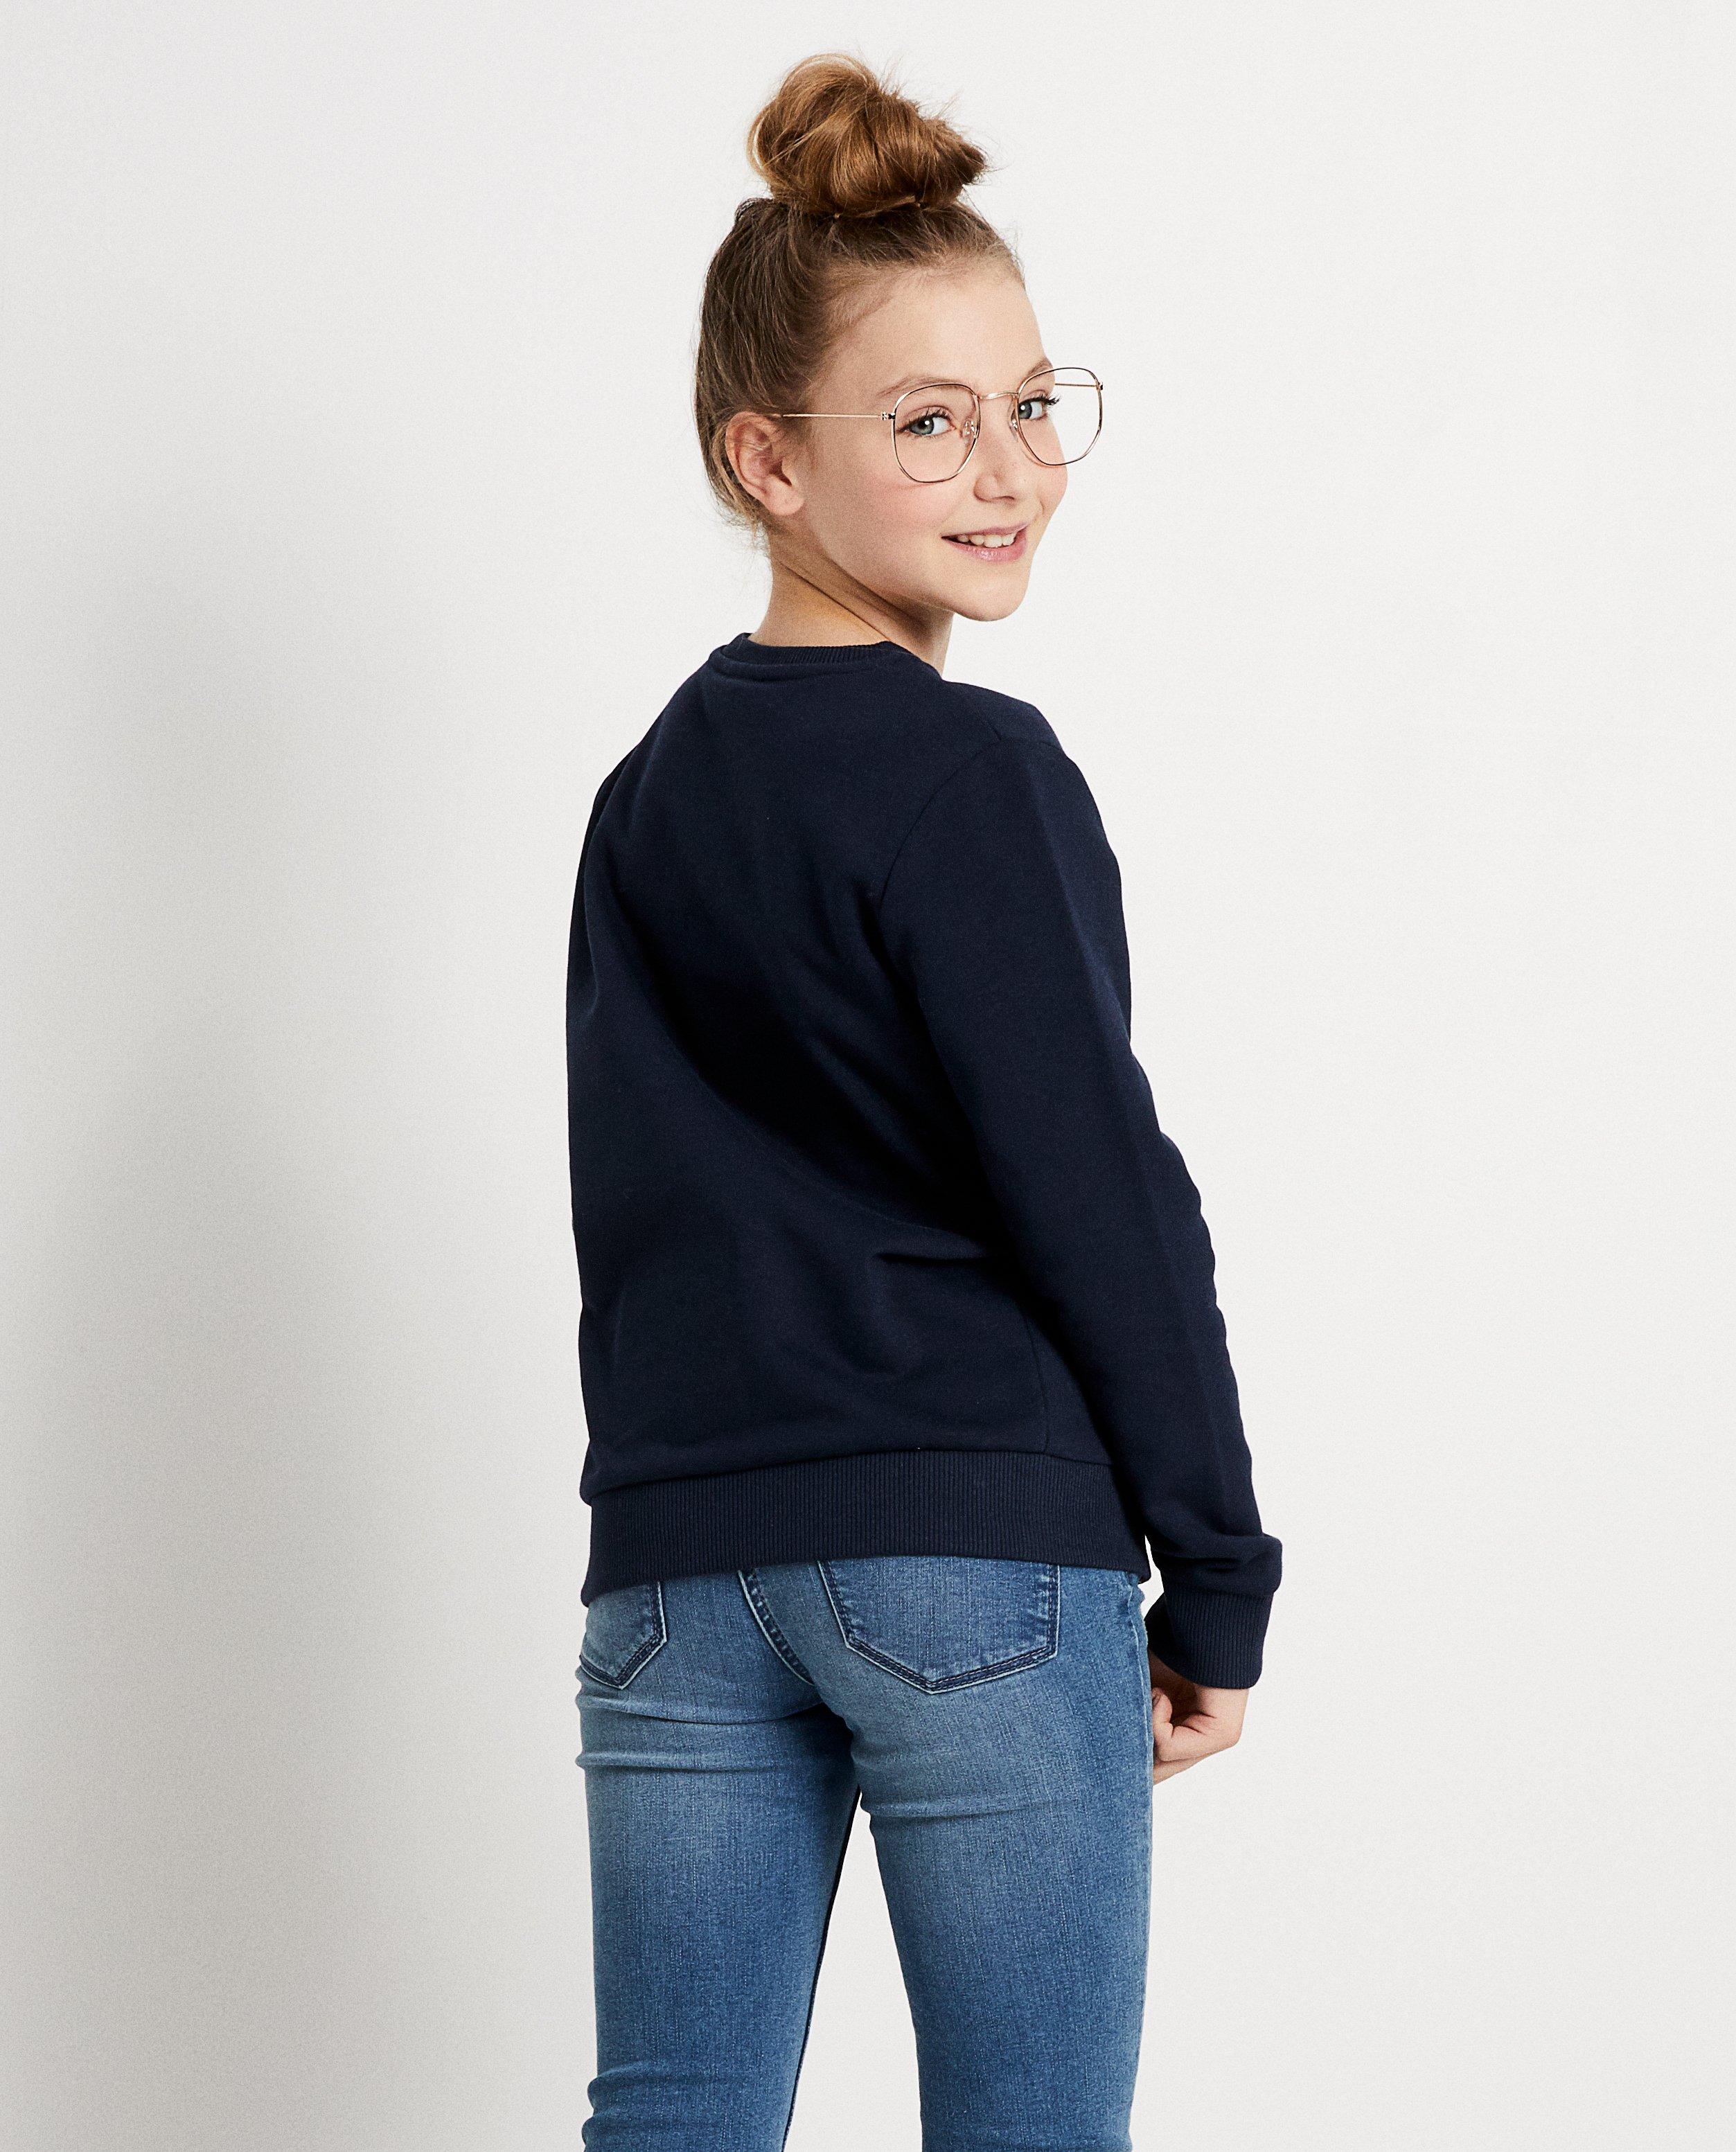 Sweaters - Donkerblauwe sweater #LikeMe